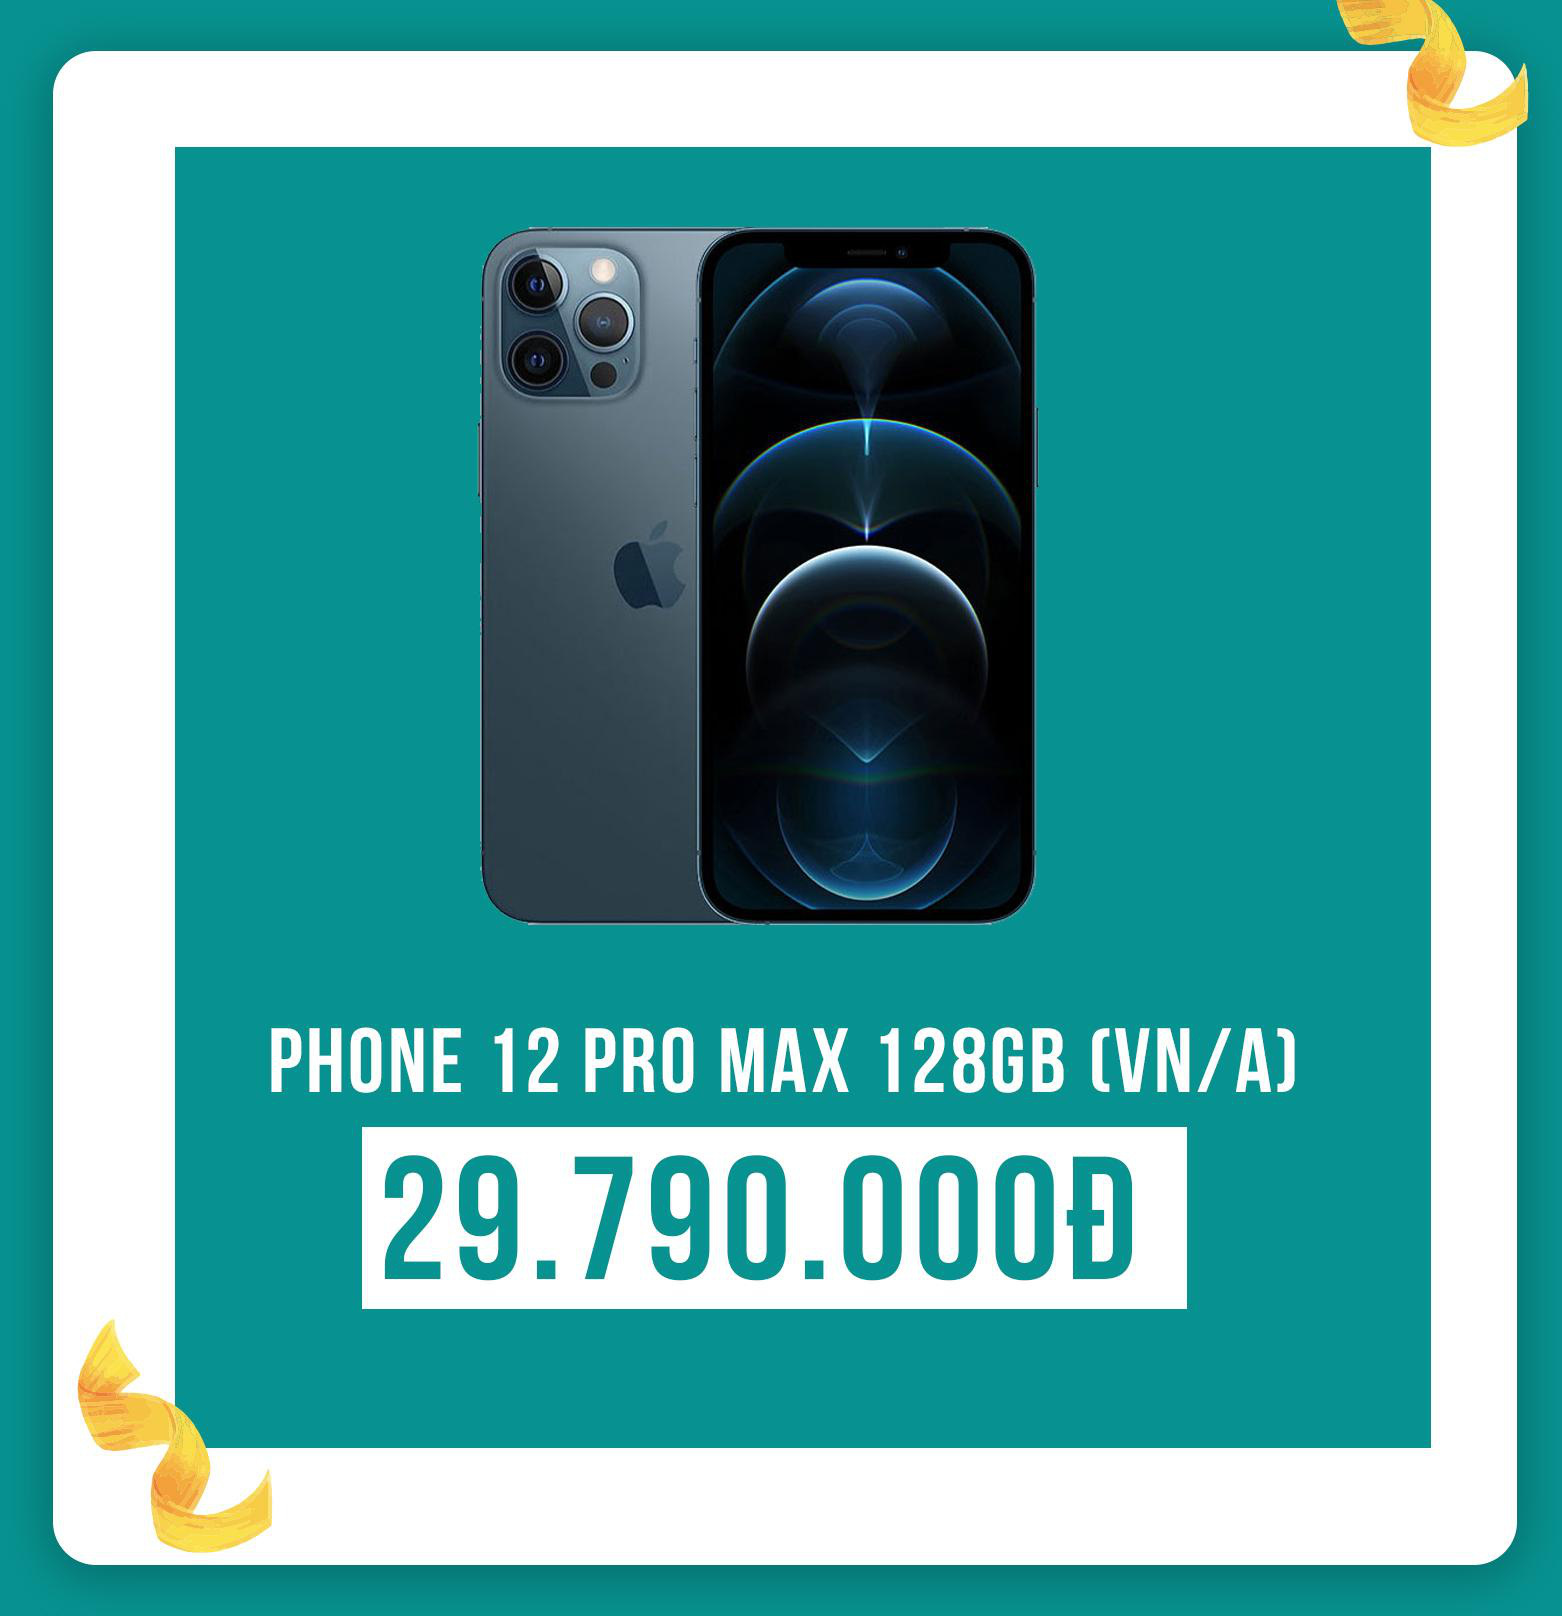 iPhone 12 Pro Max, iPhone Xs và Galaxy S21 Ultra 5G giảm đến 4,4 triệu đồng tại XTmobile - Ảnh 2.